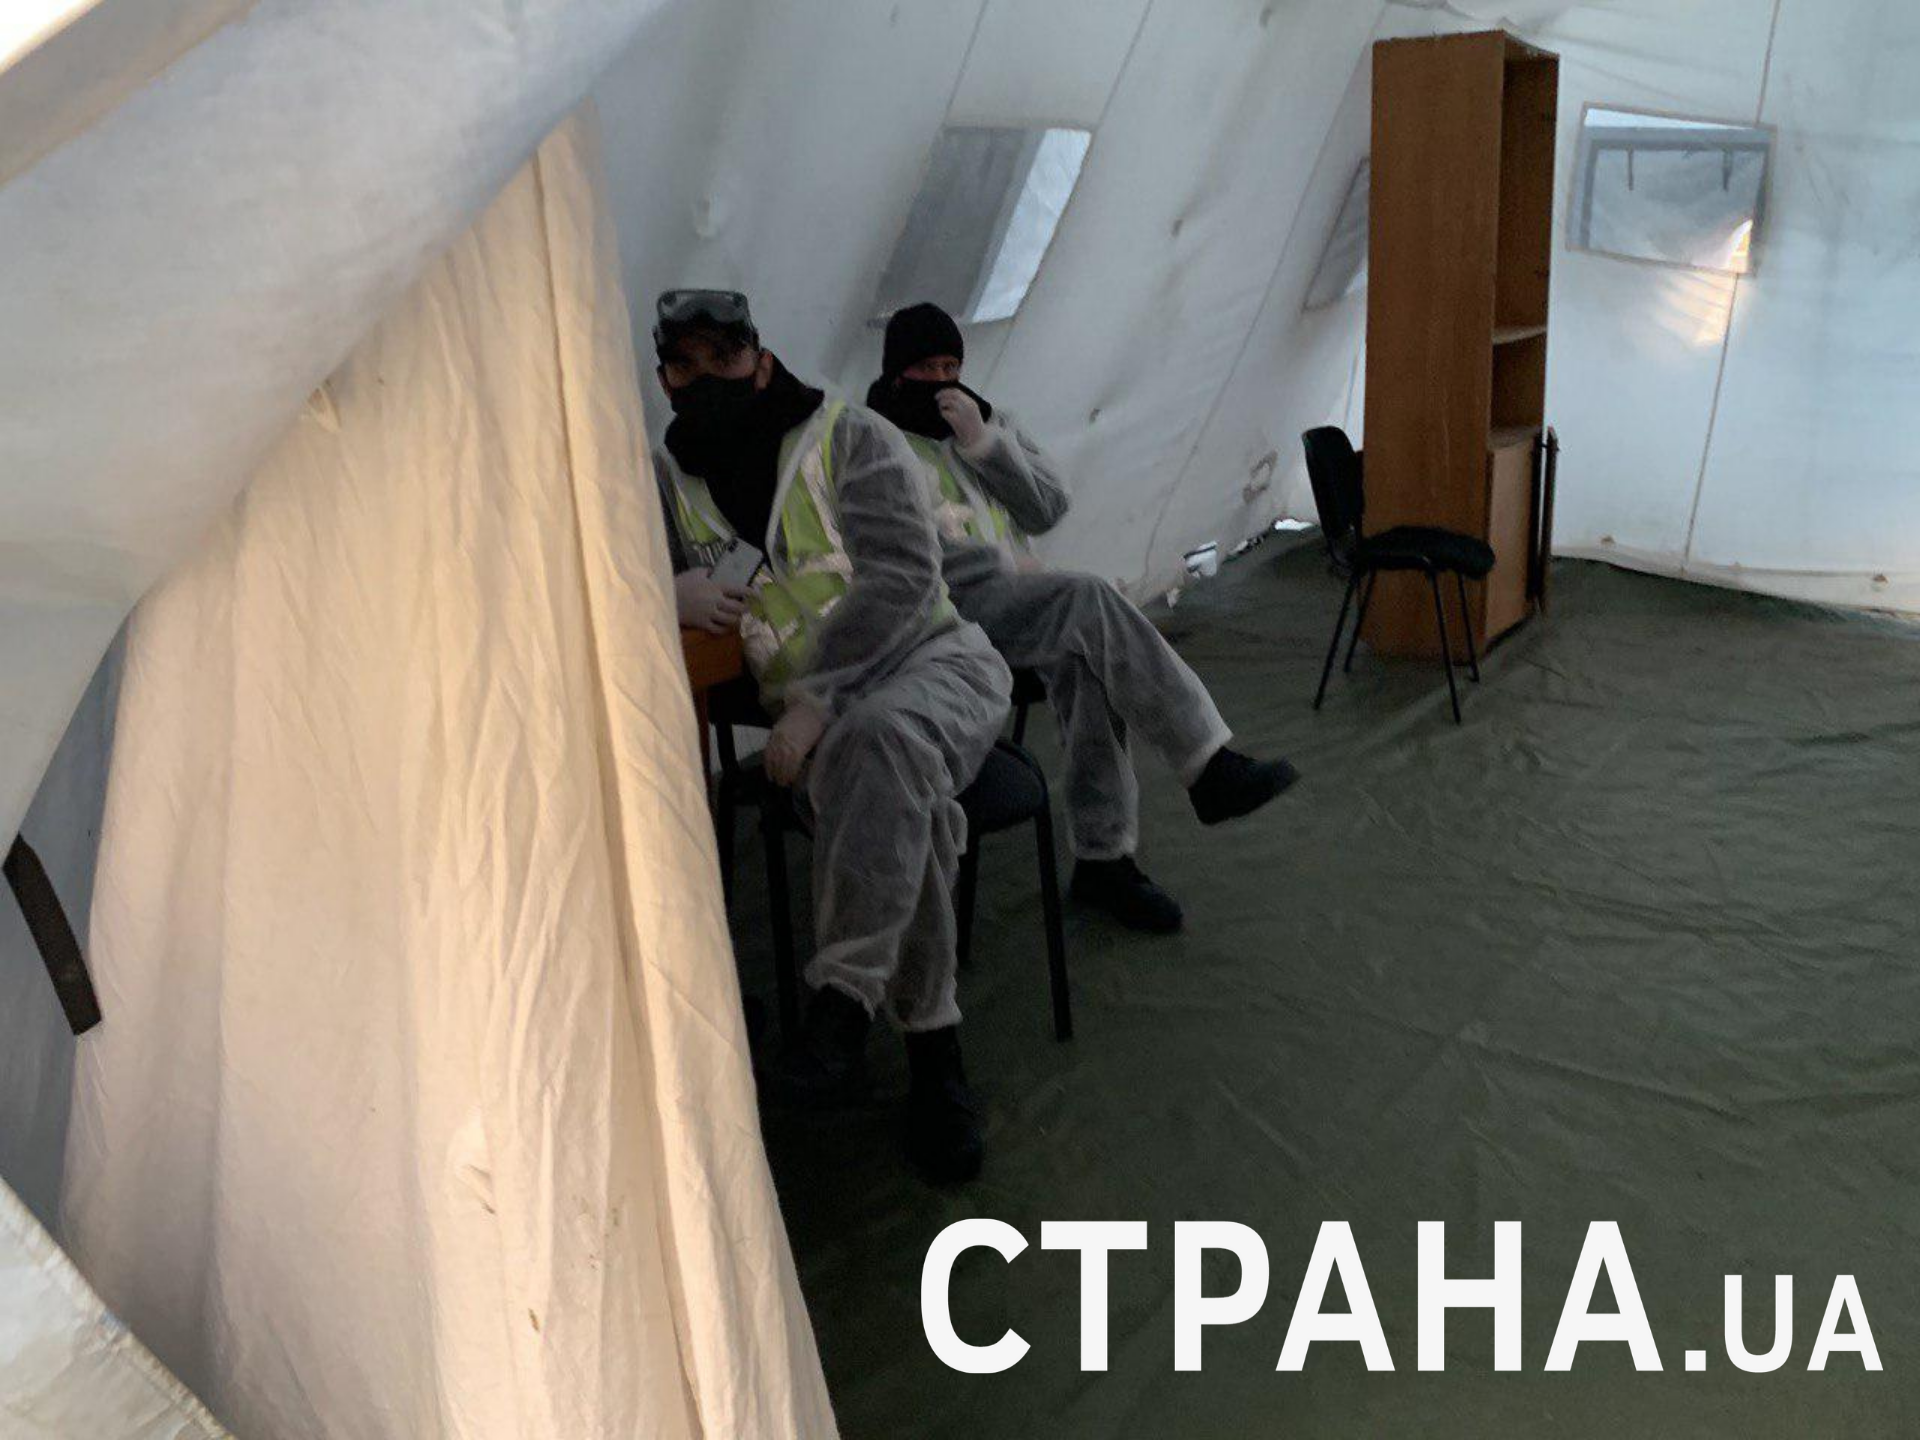 Палатка у КПП на Бориспольском шоссе 16 апреля